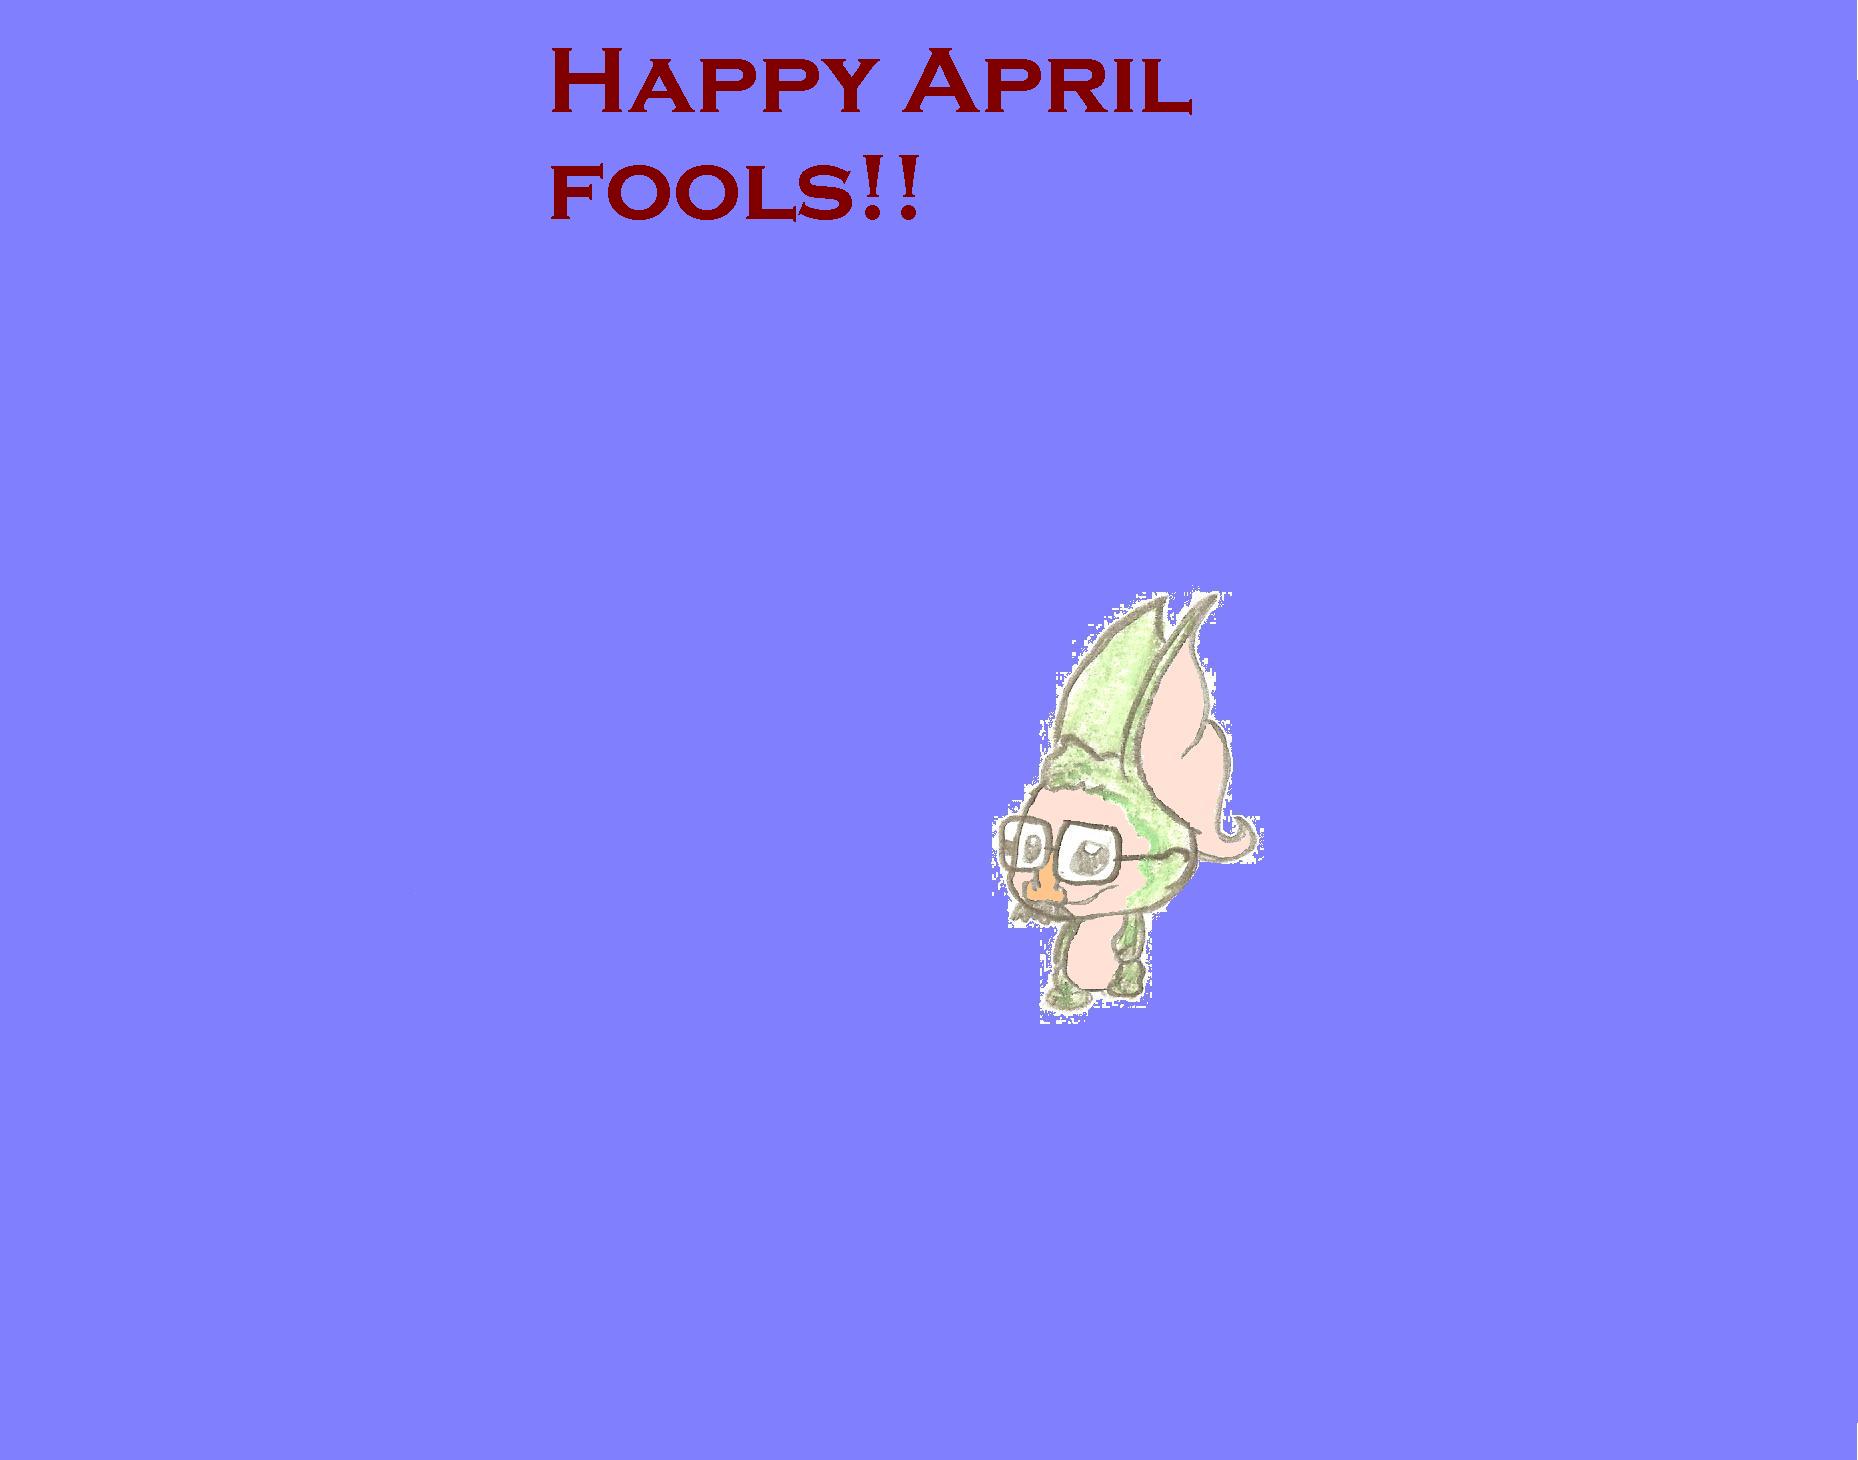 Happy April fools! by Yyoshen